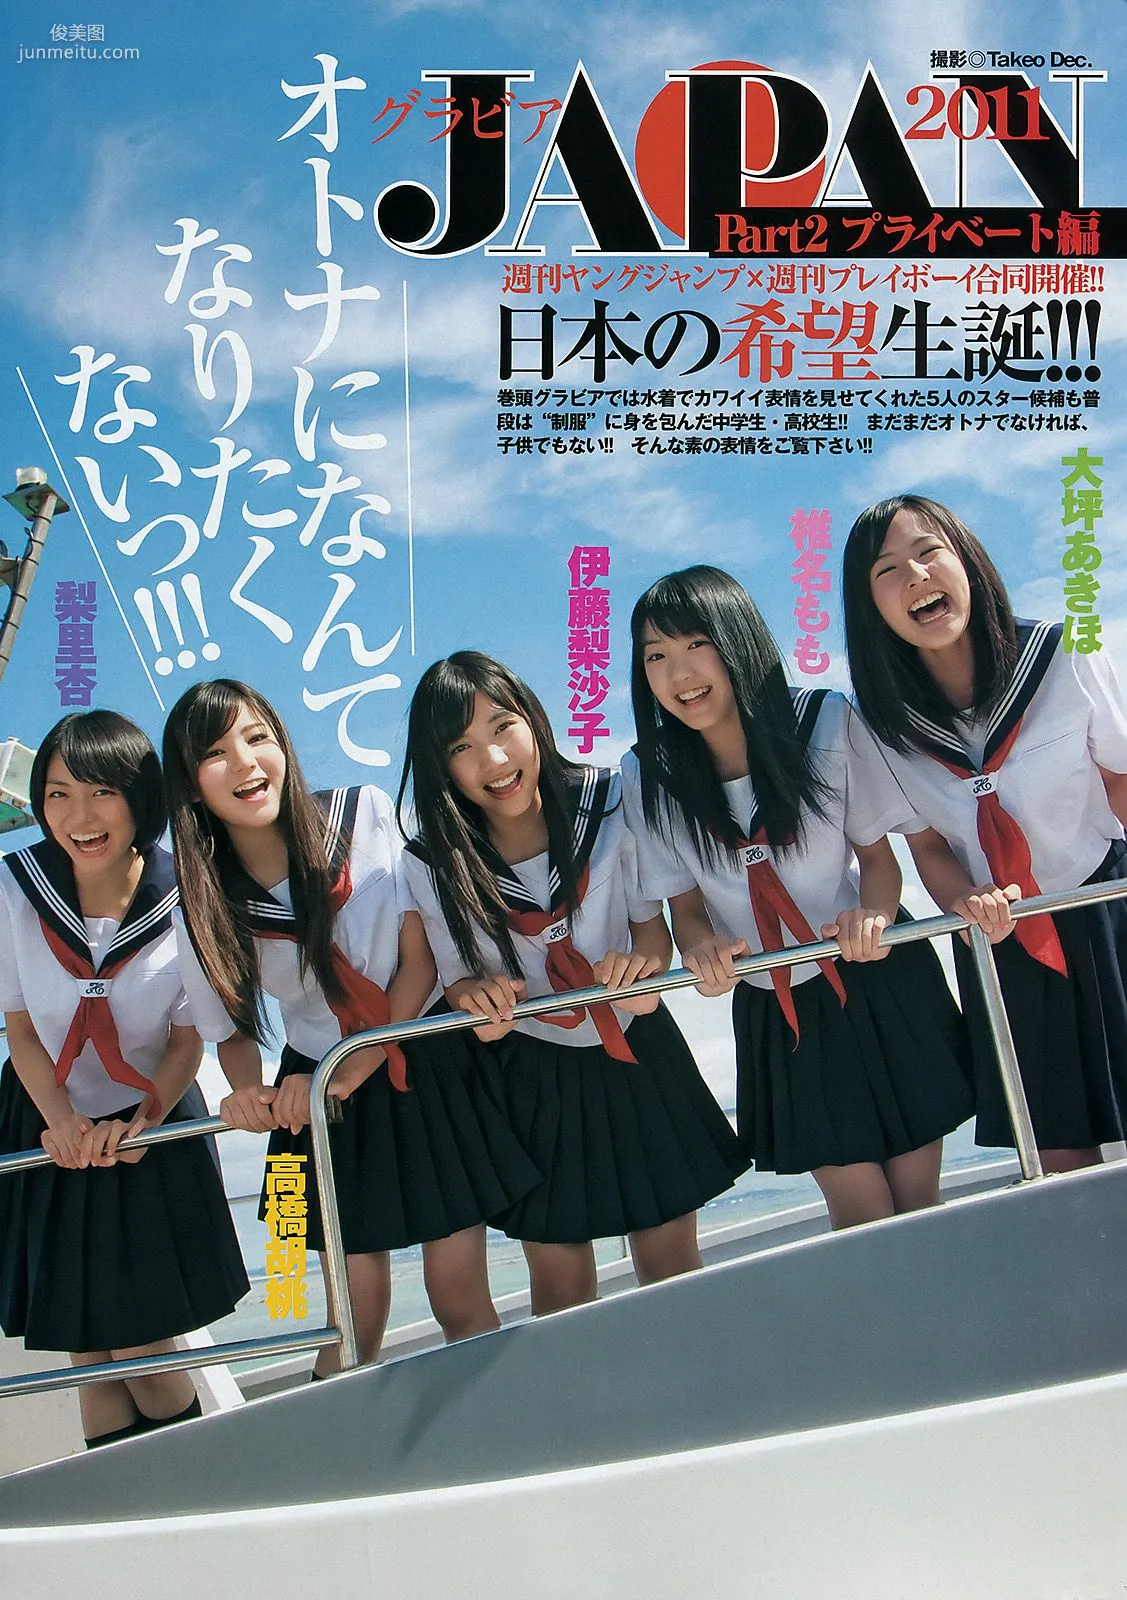 伊藤梨沙子 仲村みう [Weekly Young Jump] 2011年No.50 写真杂志9